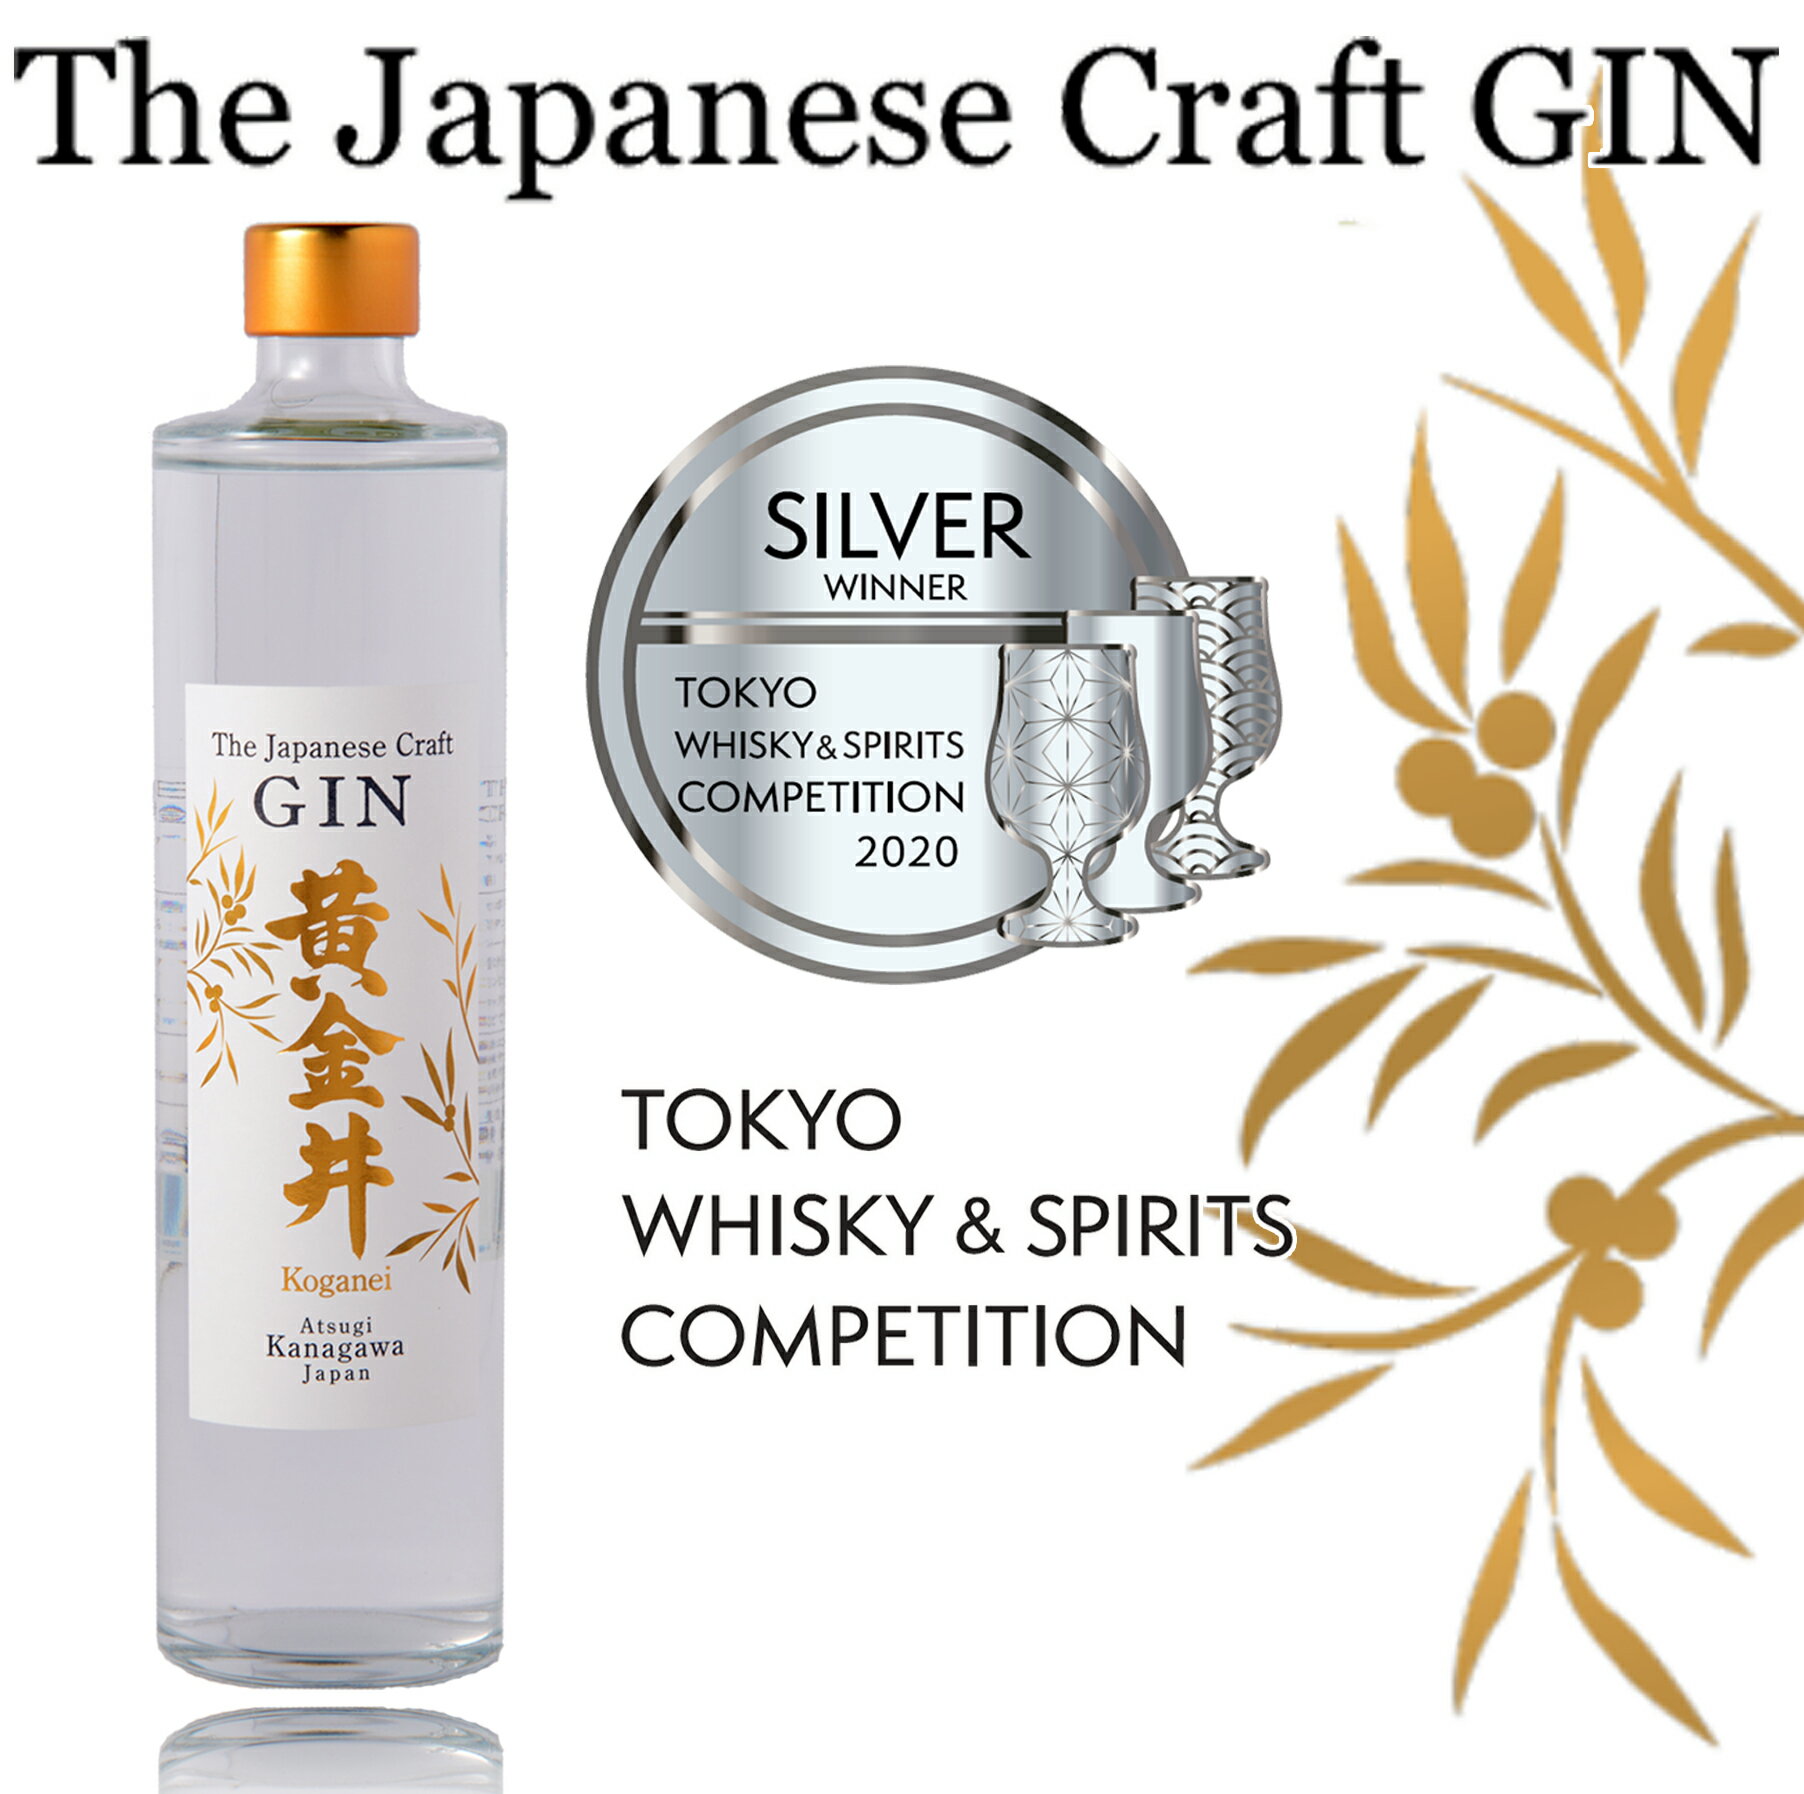 黄金井酒造 The Japanese Craft GIN 黄金井 500ml クラフトジン スピリッツ